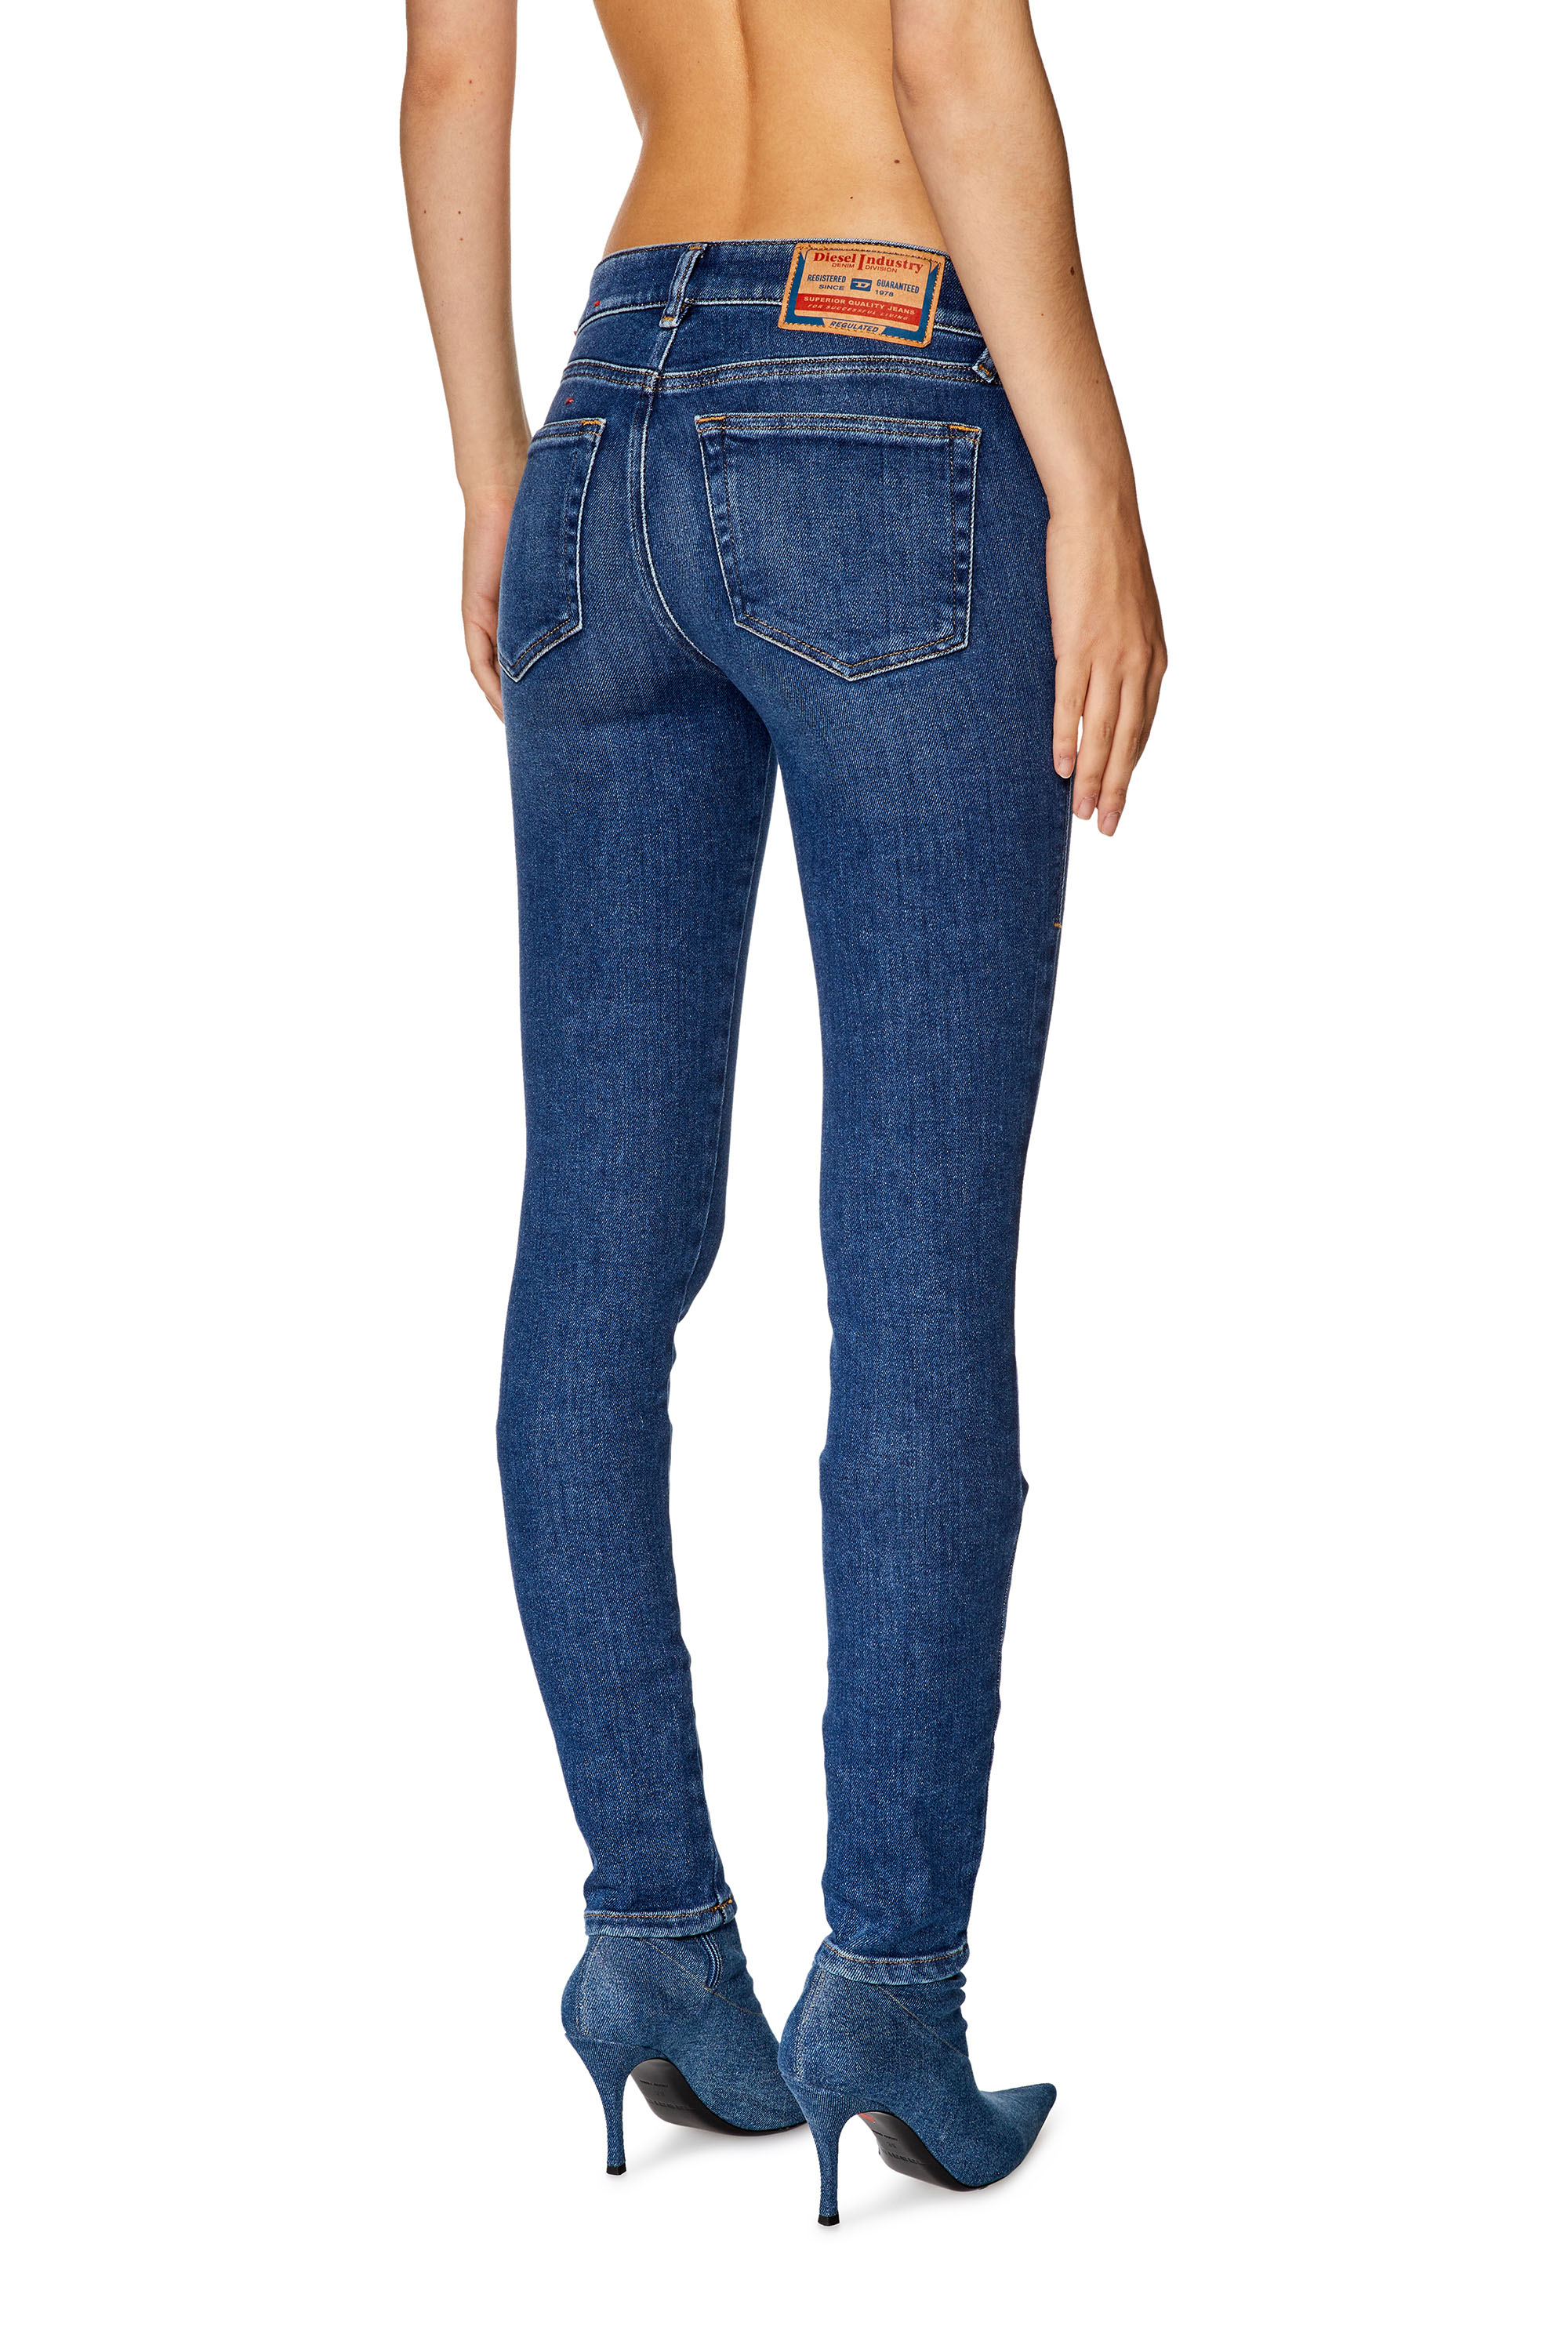 Diesel - Super skinny Jeans 2018 Slandy-Low 09F86, Medium blue - Image 2